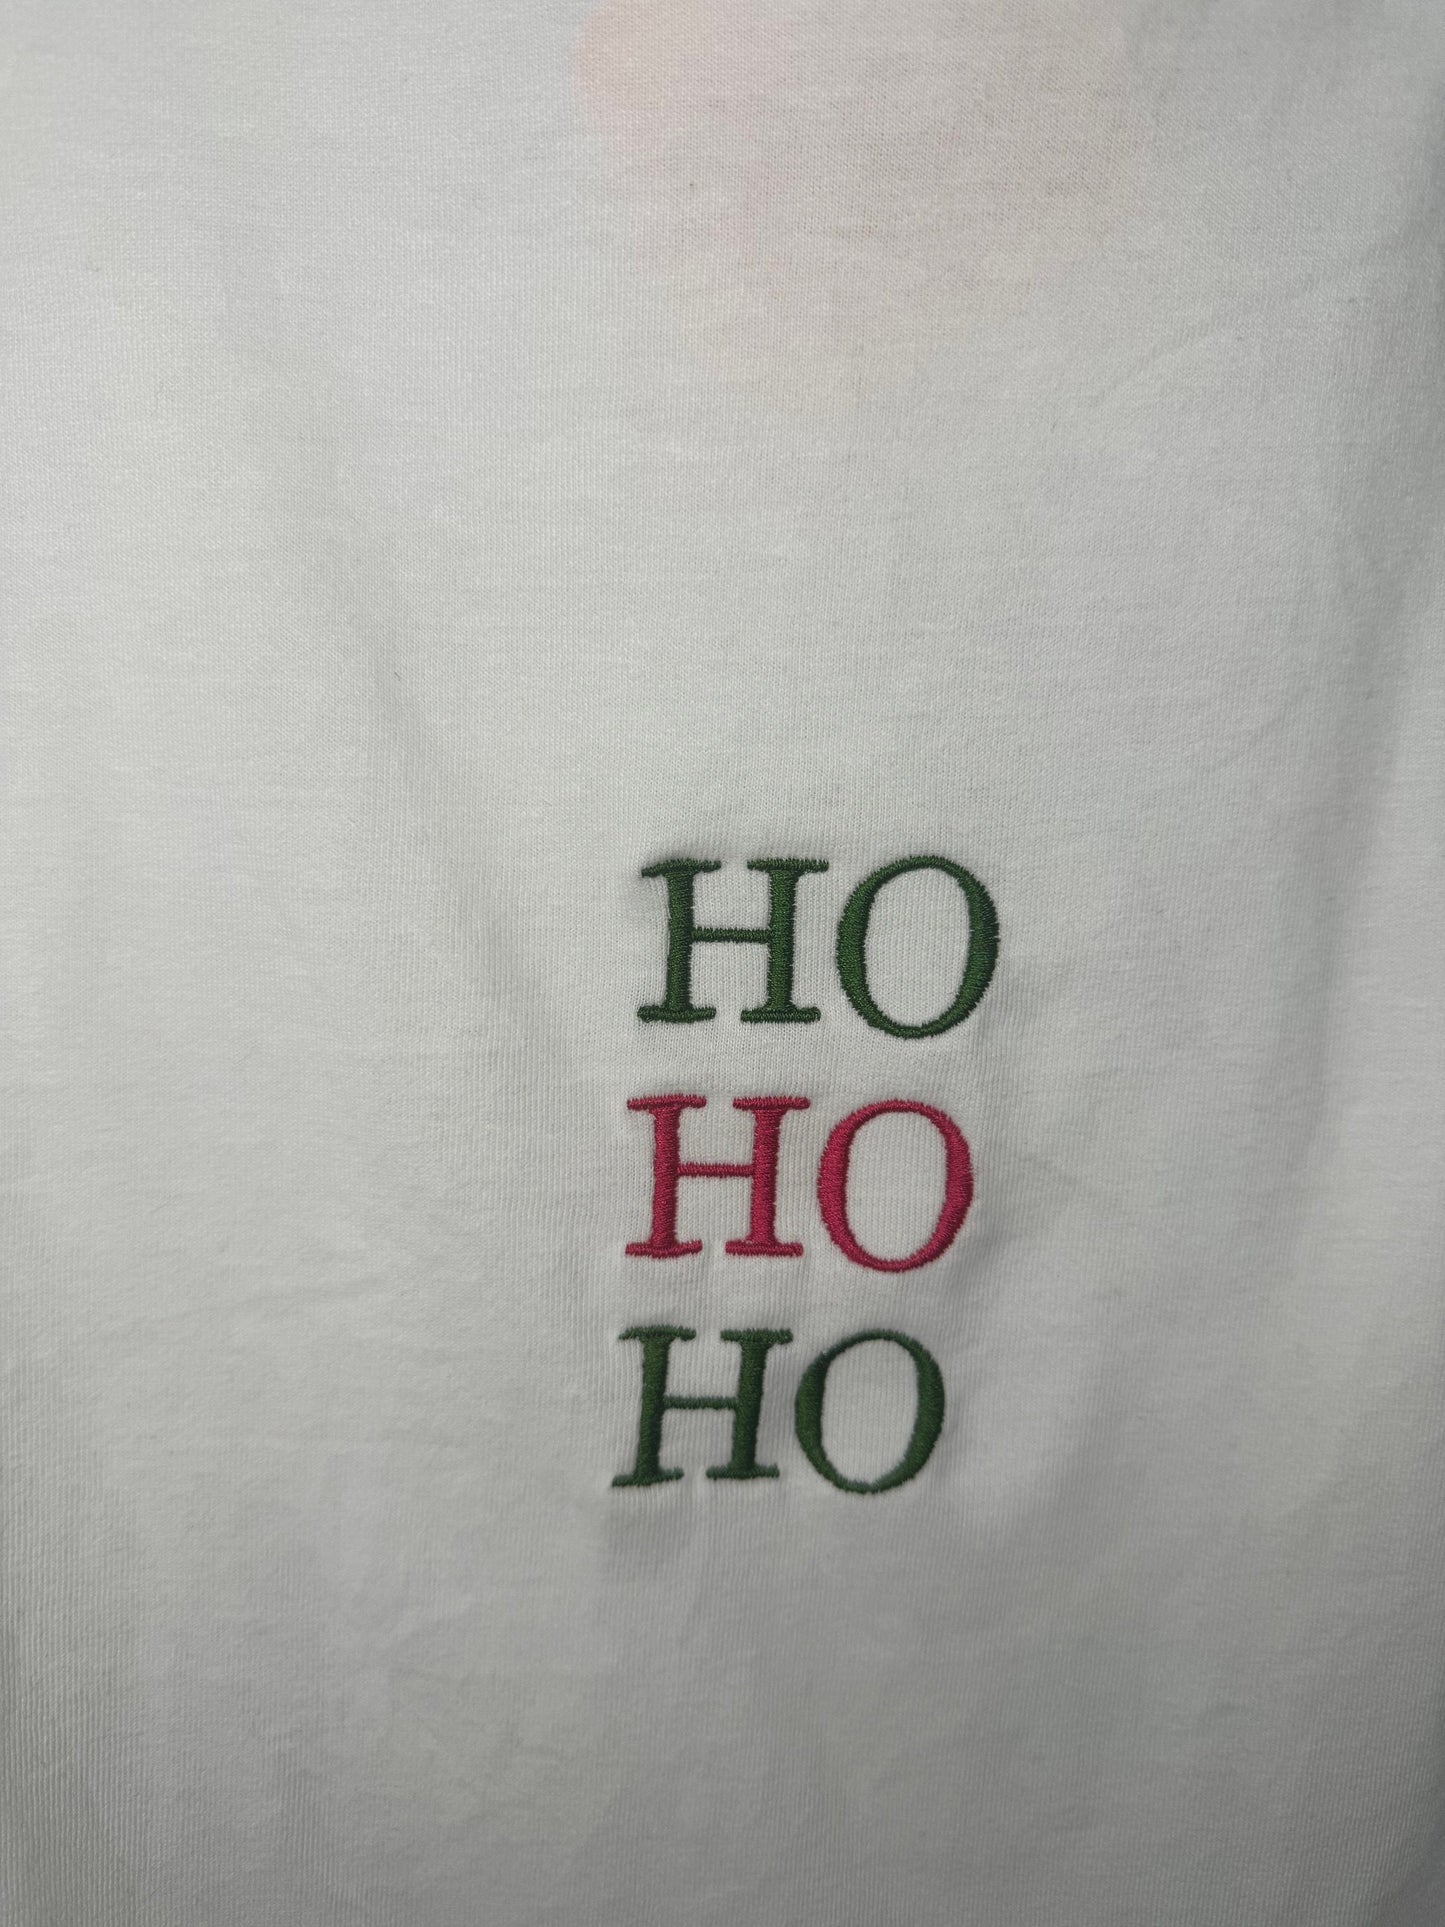 HO HO HO Festive Sweater | Christmas Jumper| Santa Claus | Mrs Claus |